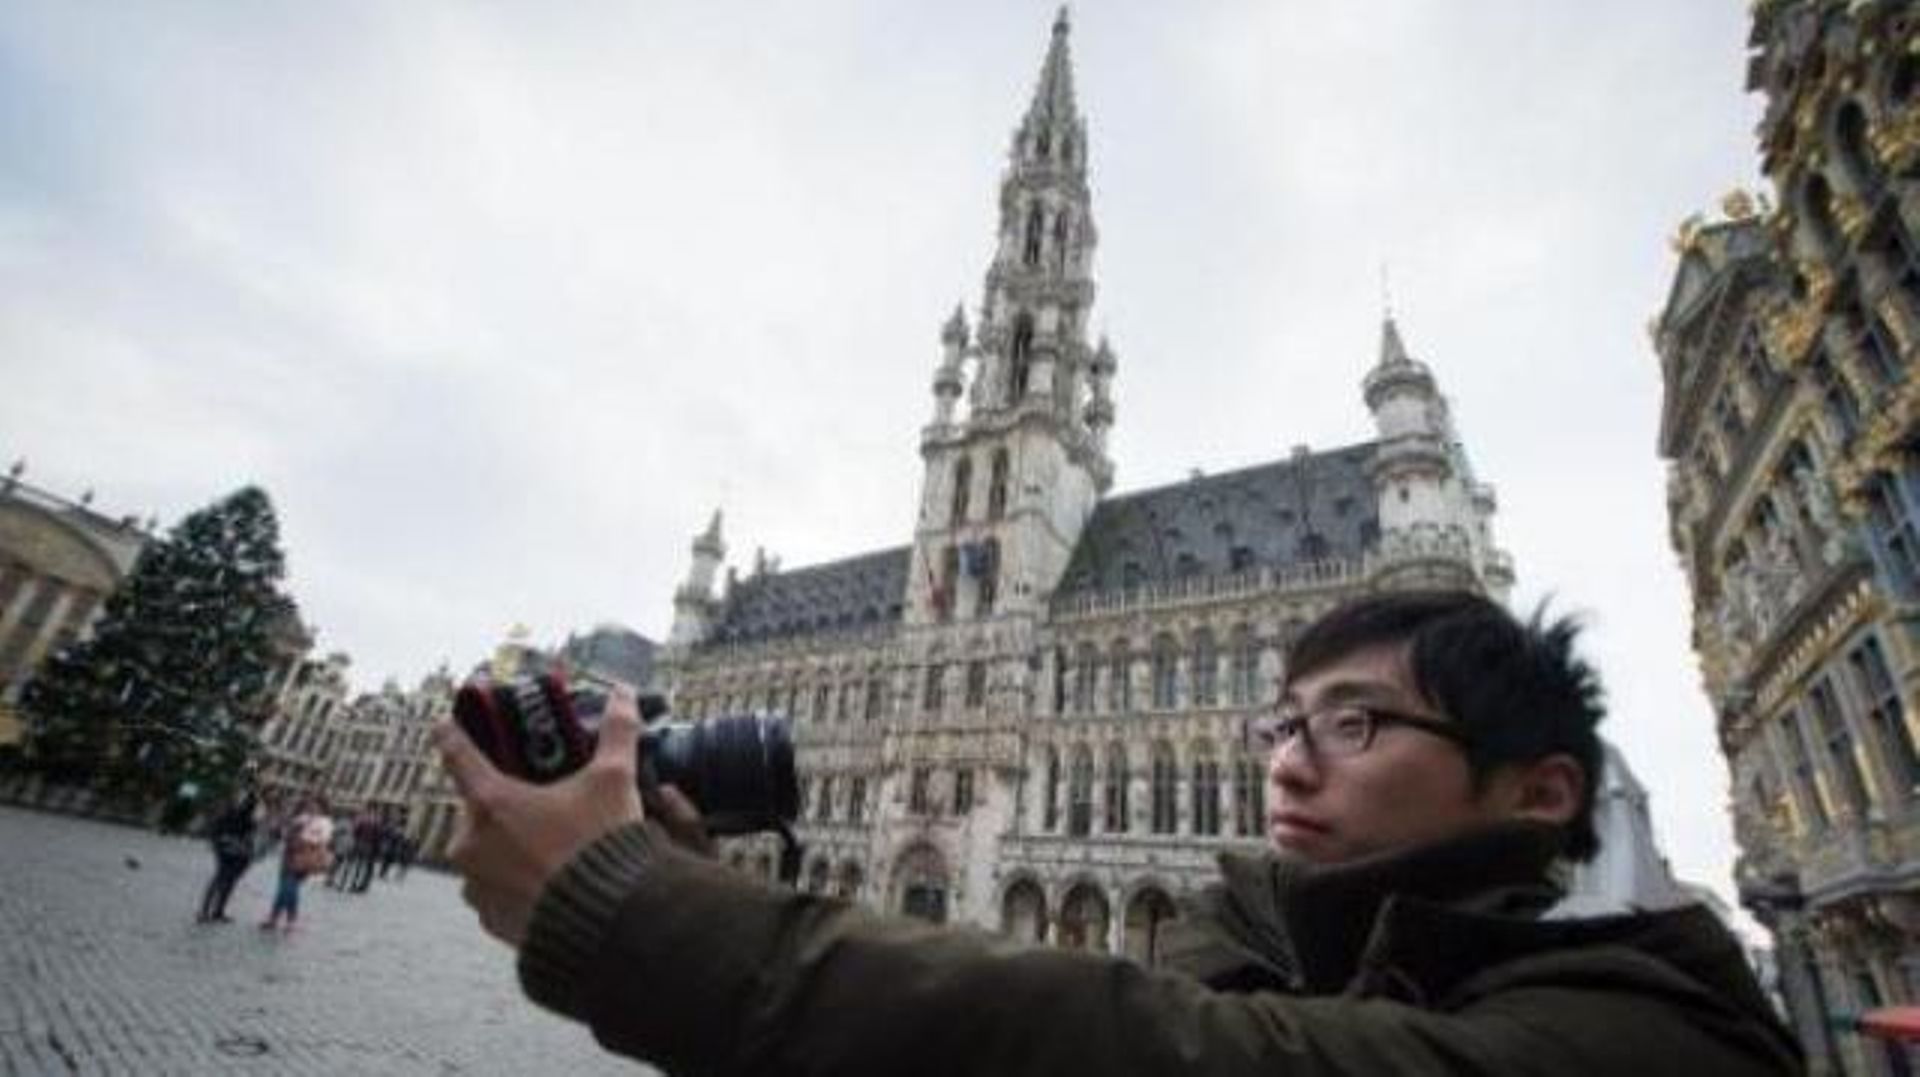 Menace terroriste - Les réservations pour Bruxelles, destination touristique, reprennent progressivement